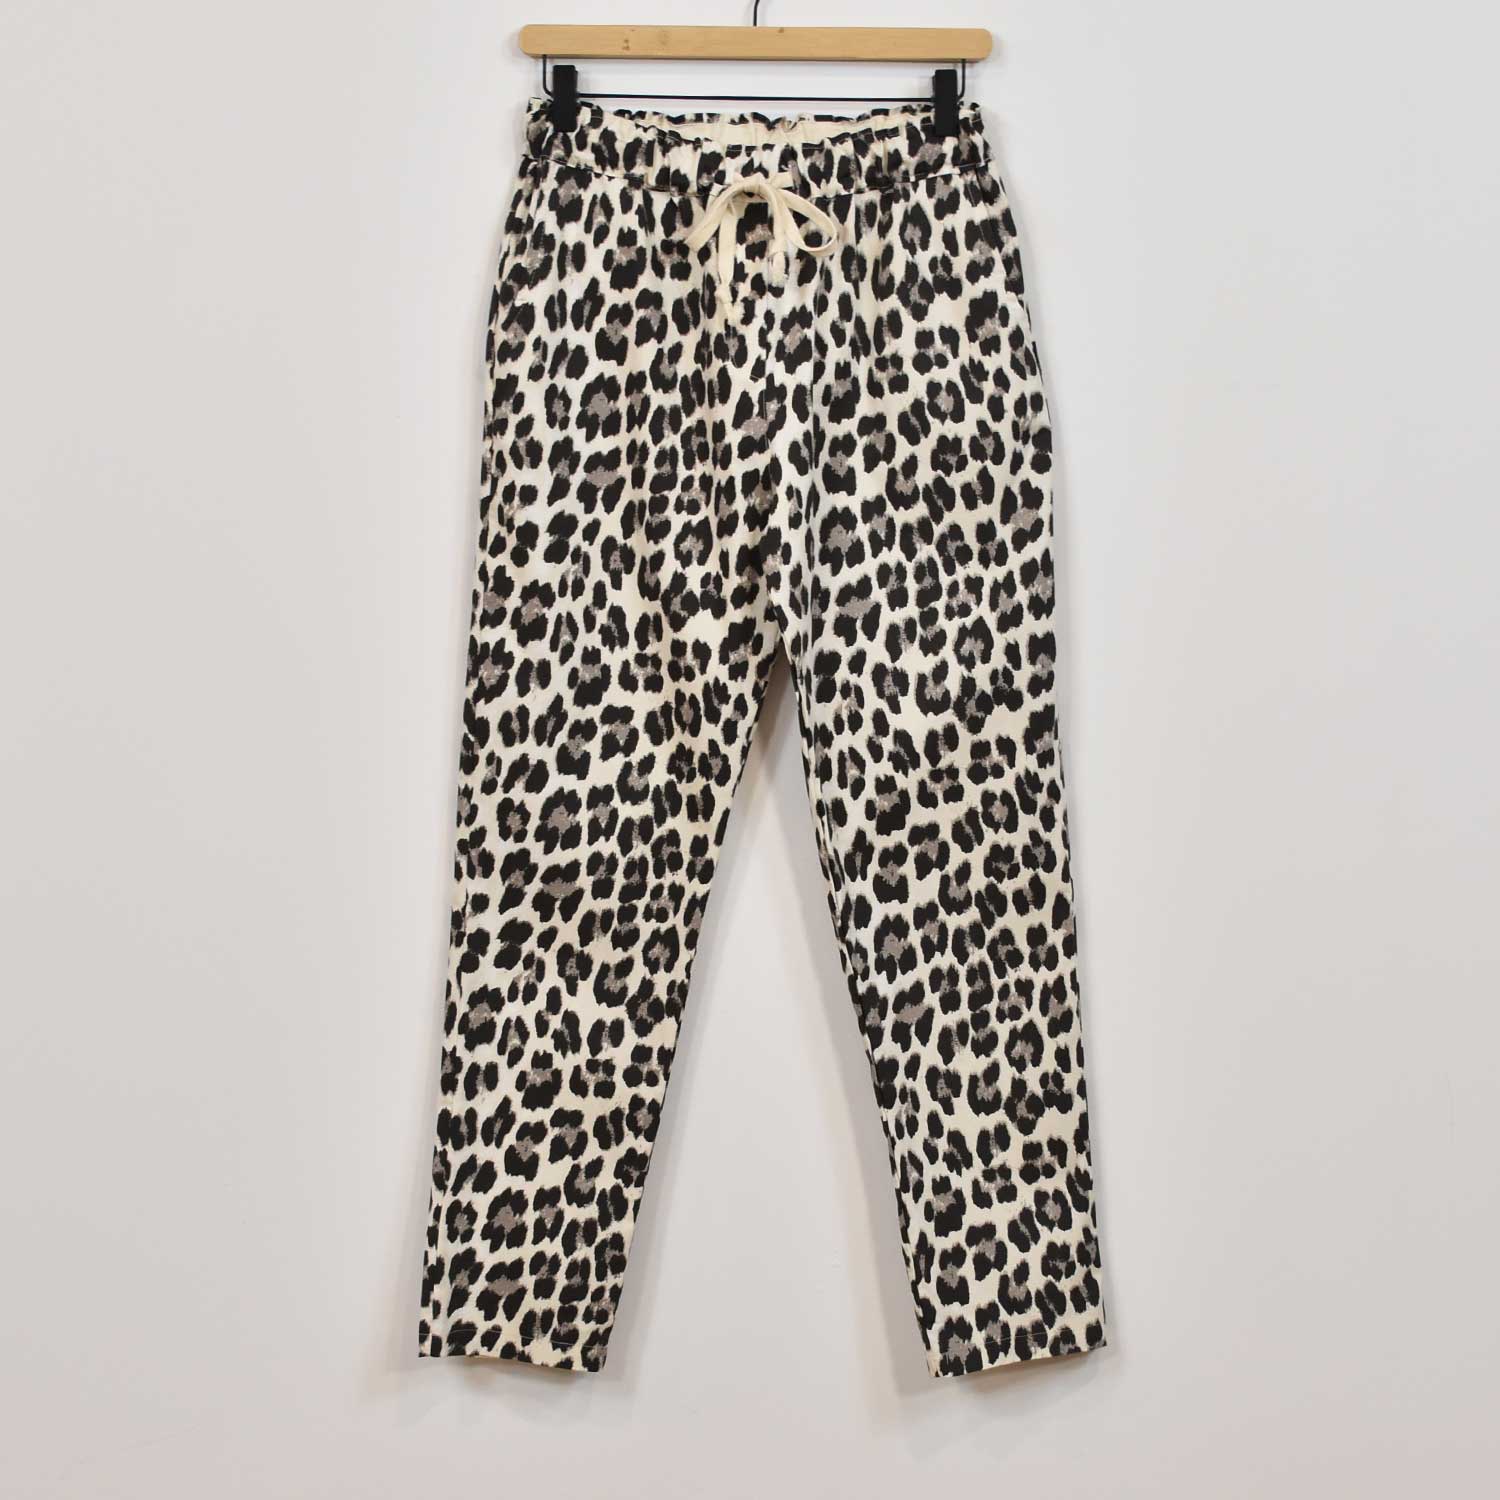 Pantalon jogger leopard gris